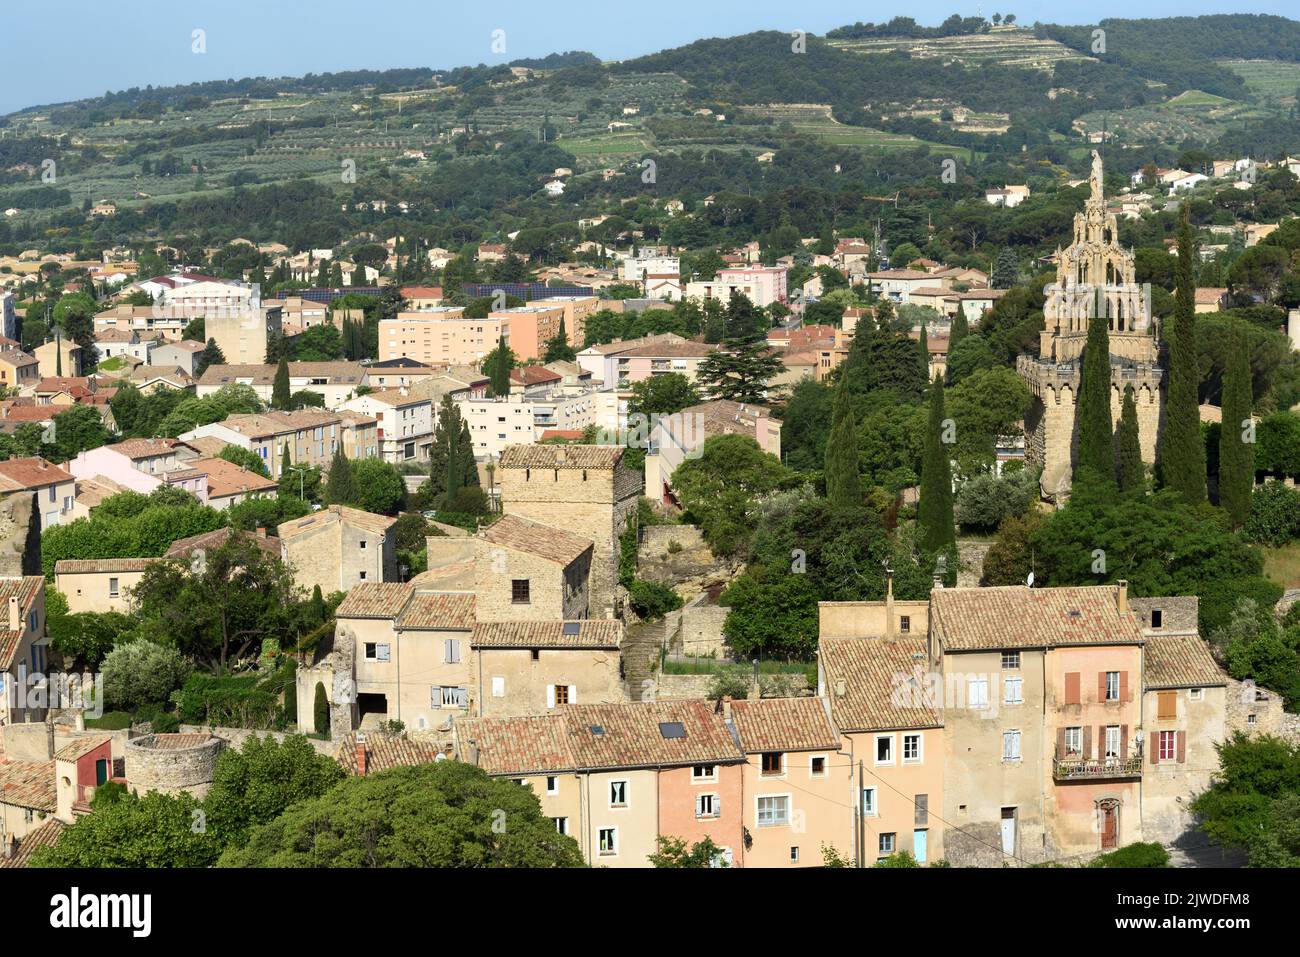 Vista sulla città vecchia di Nyons con la torre di pietra medievale, Tour Randonne e Cappella gotica di Notre-Dame-de-Bon-Secours Nyons Drôme Provence France Foto Stock